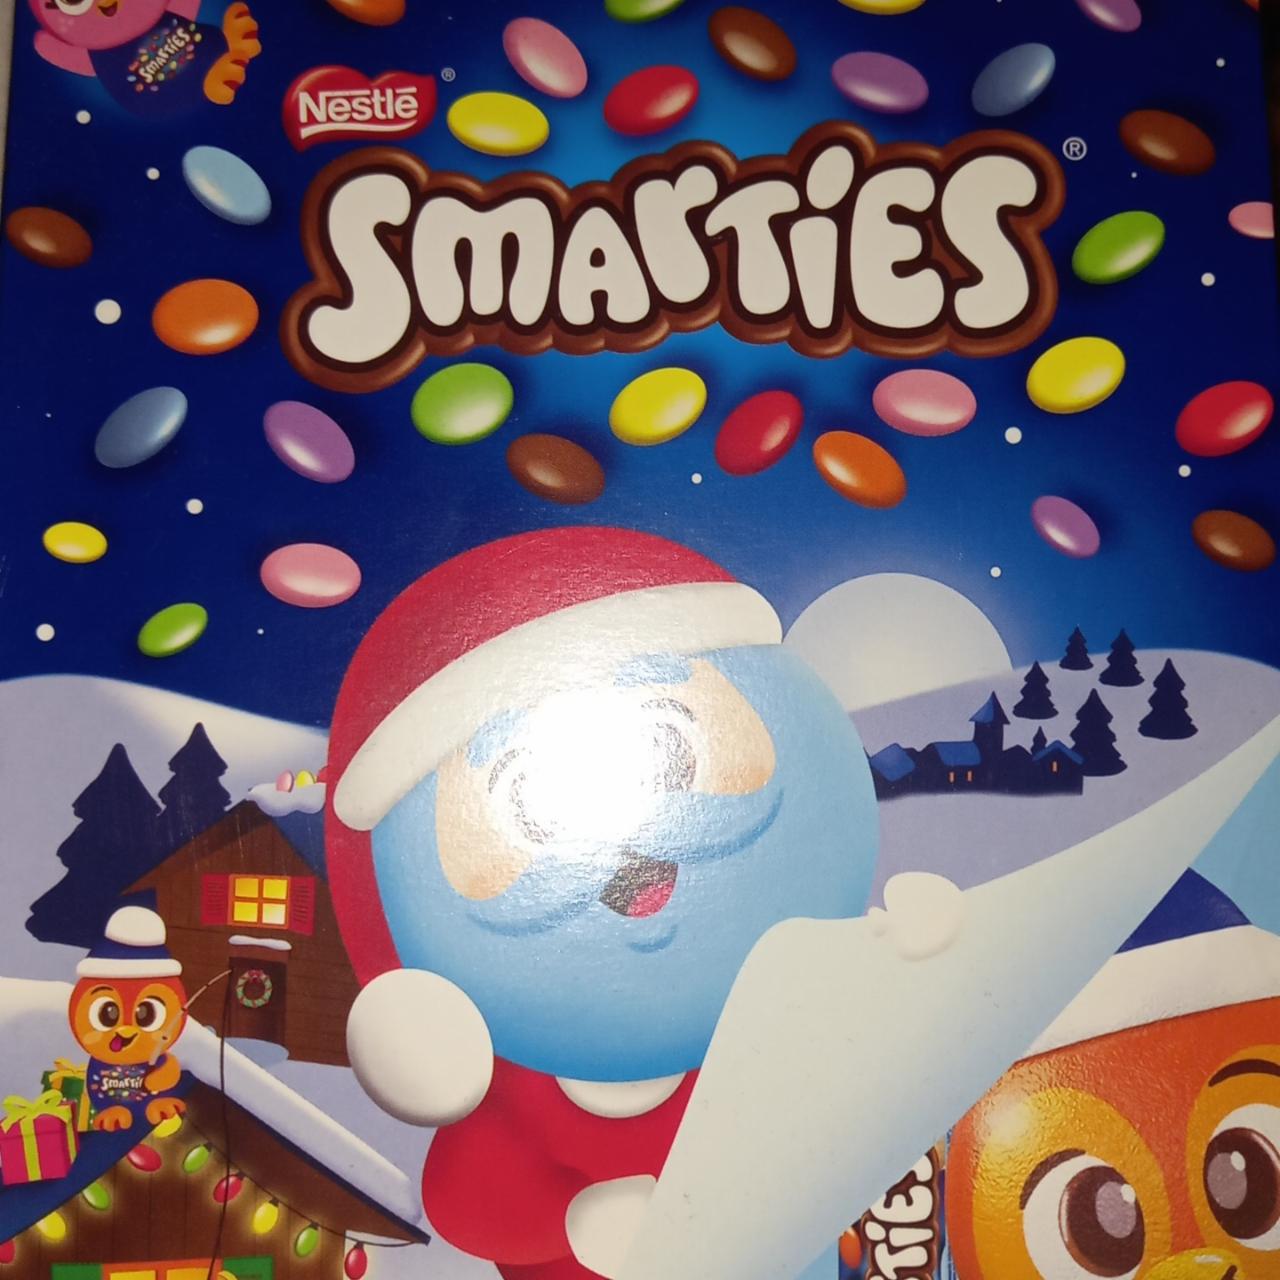 Képek - Smarties karácsonyi csomag Nestlé